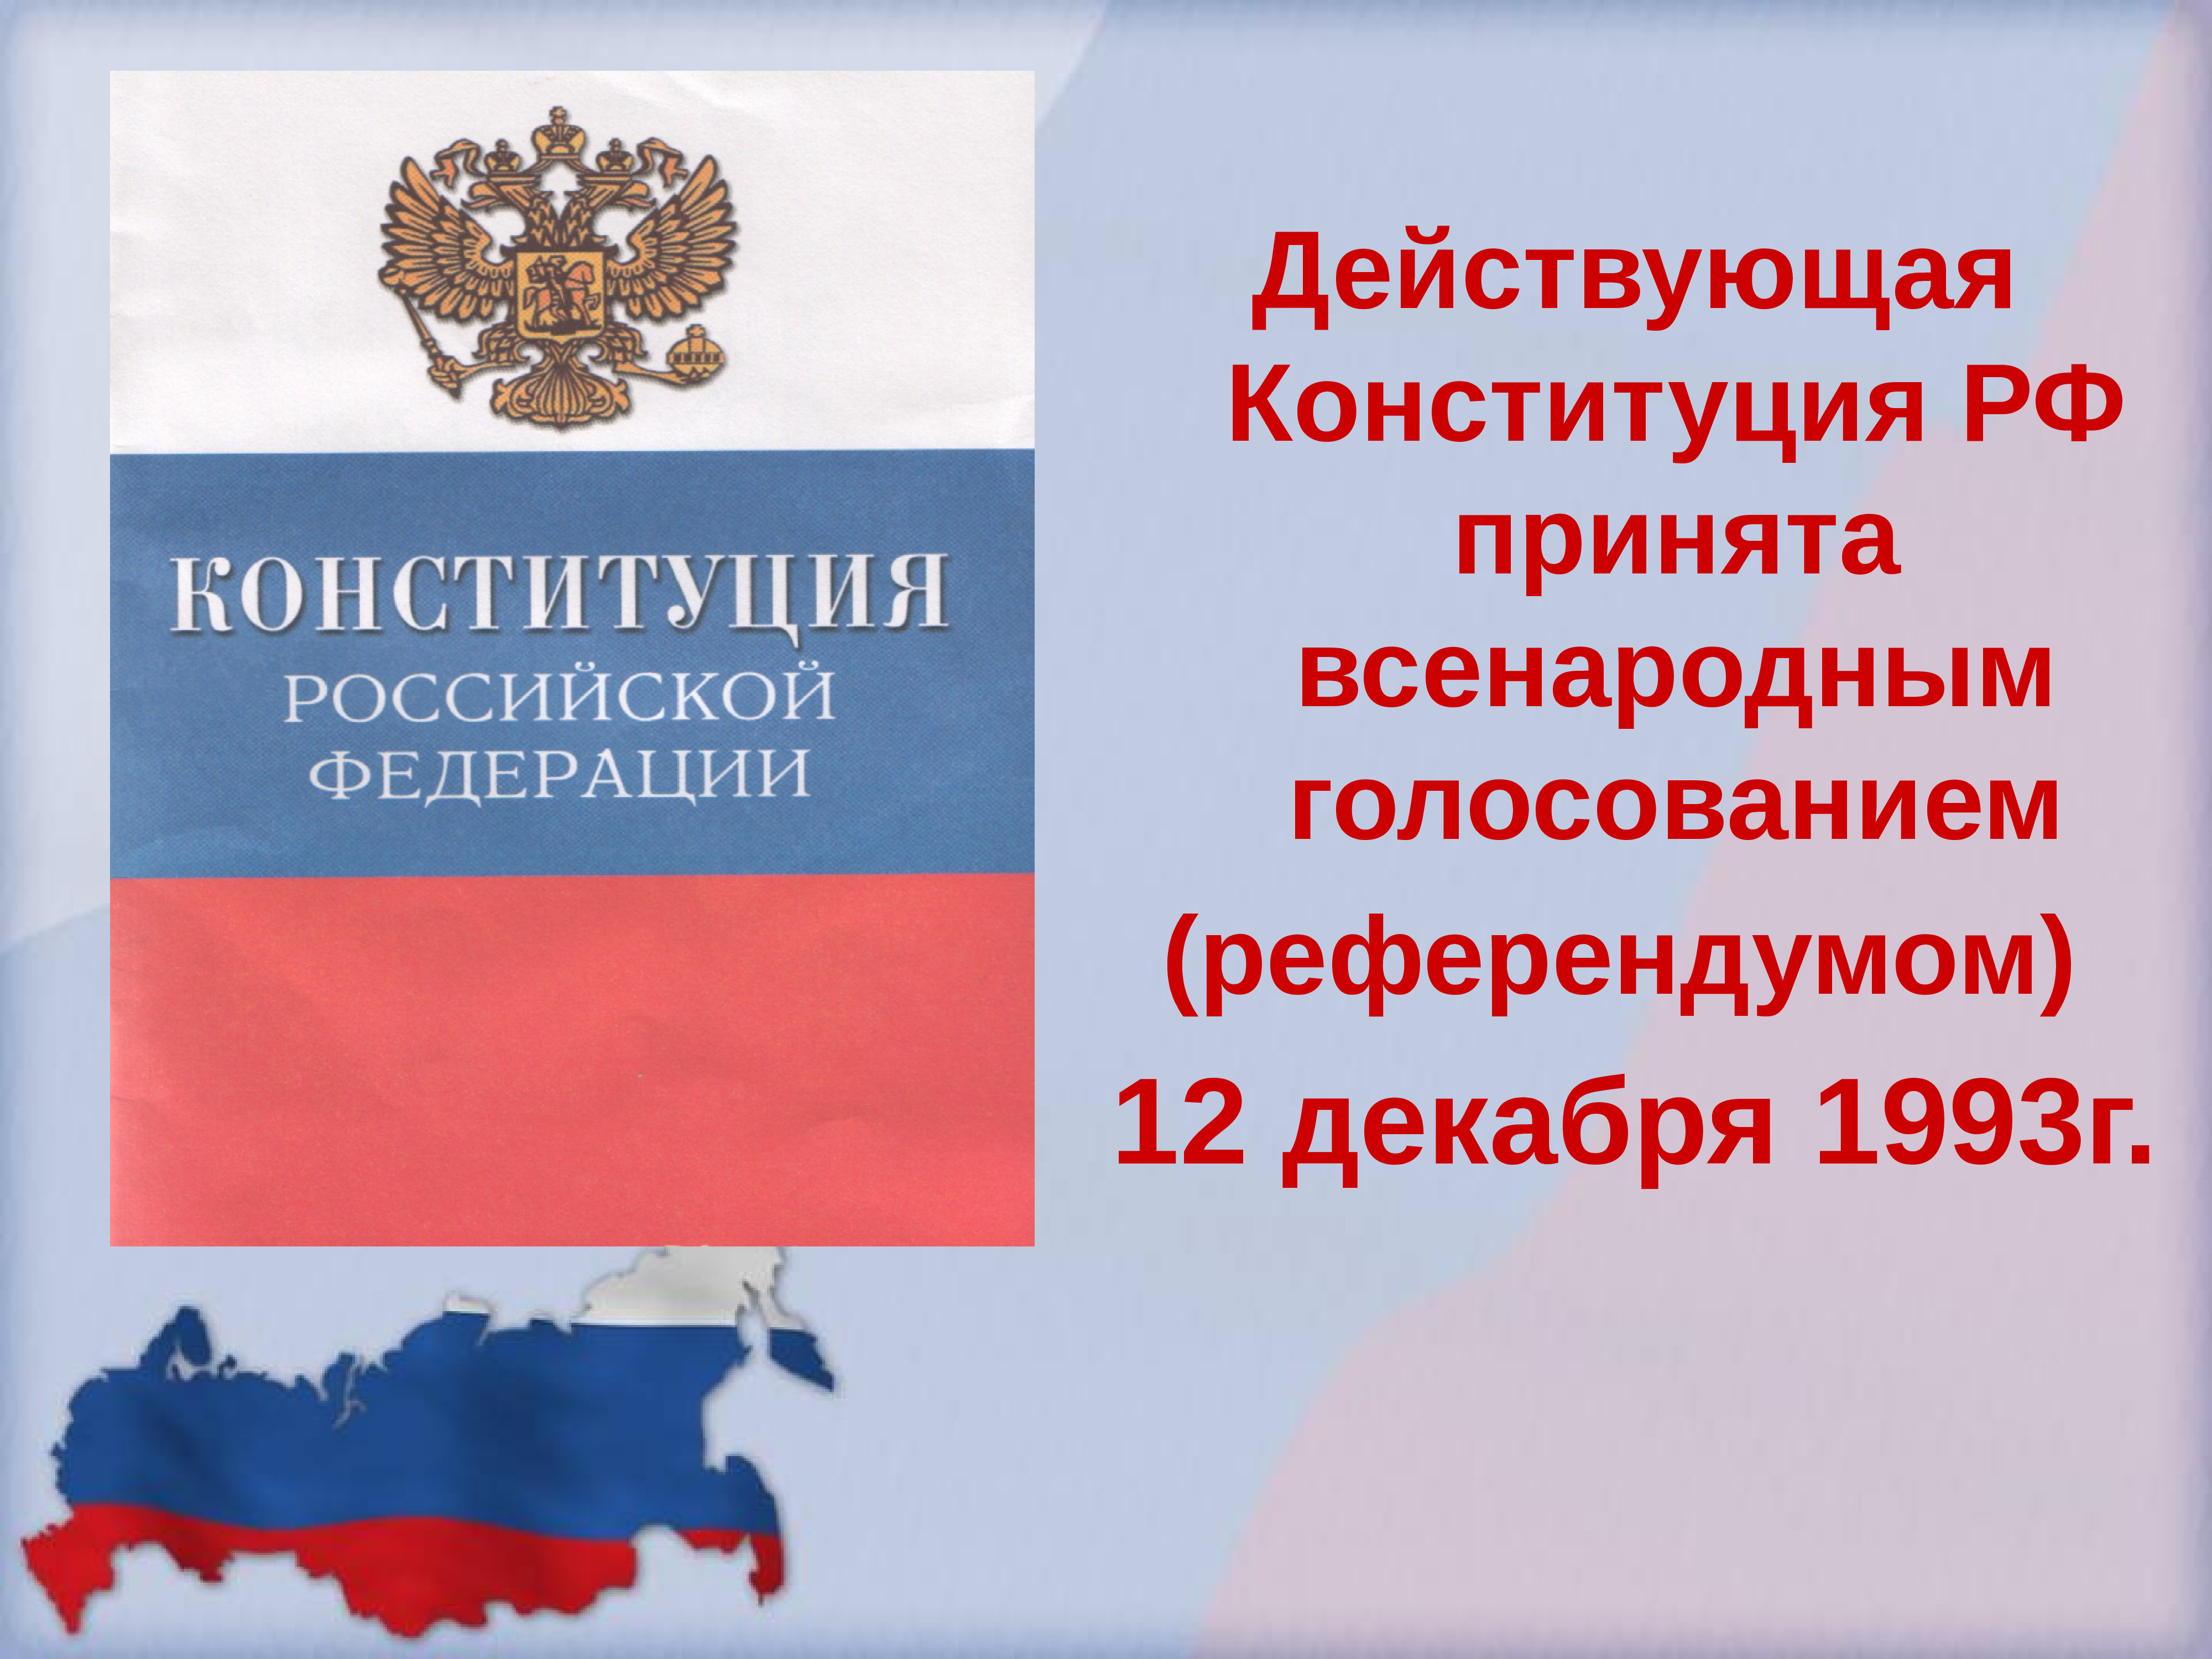 Конституция 4 декабря. Конституция Российской Федерации 12 декабря 1993 года. Конституция Российской Федерации (принятая 12.12.1993 г.).. Конституция Российской Федерации от 12.12.1993 книга. Конституция Российской Федерации 1993 года была принята.